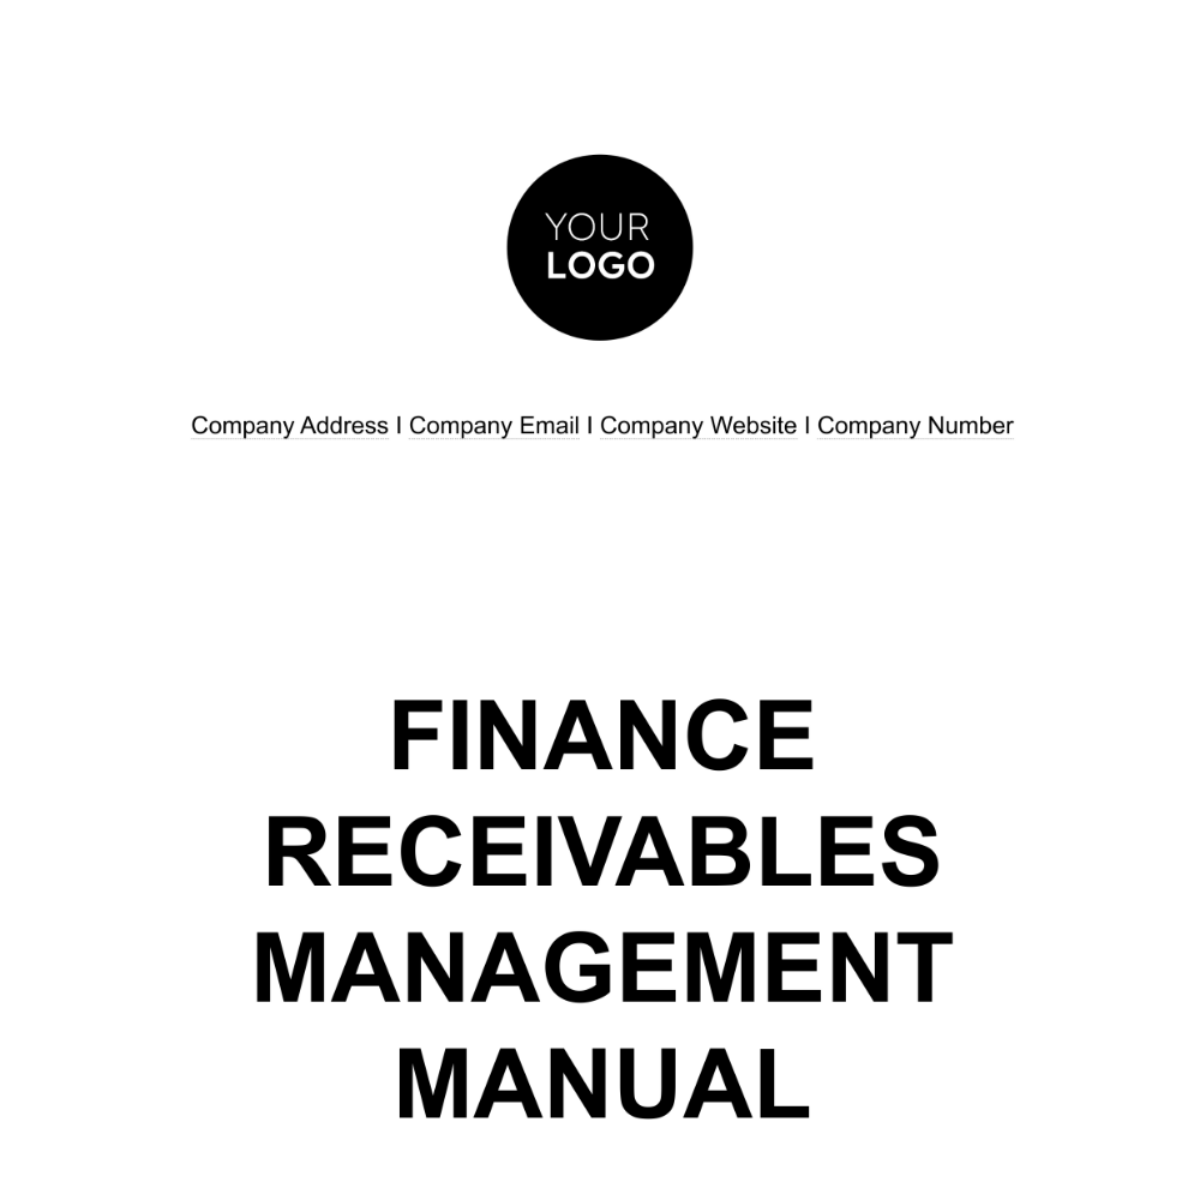 Finance Receivables Management Manual Template